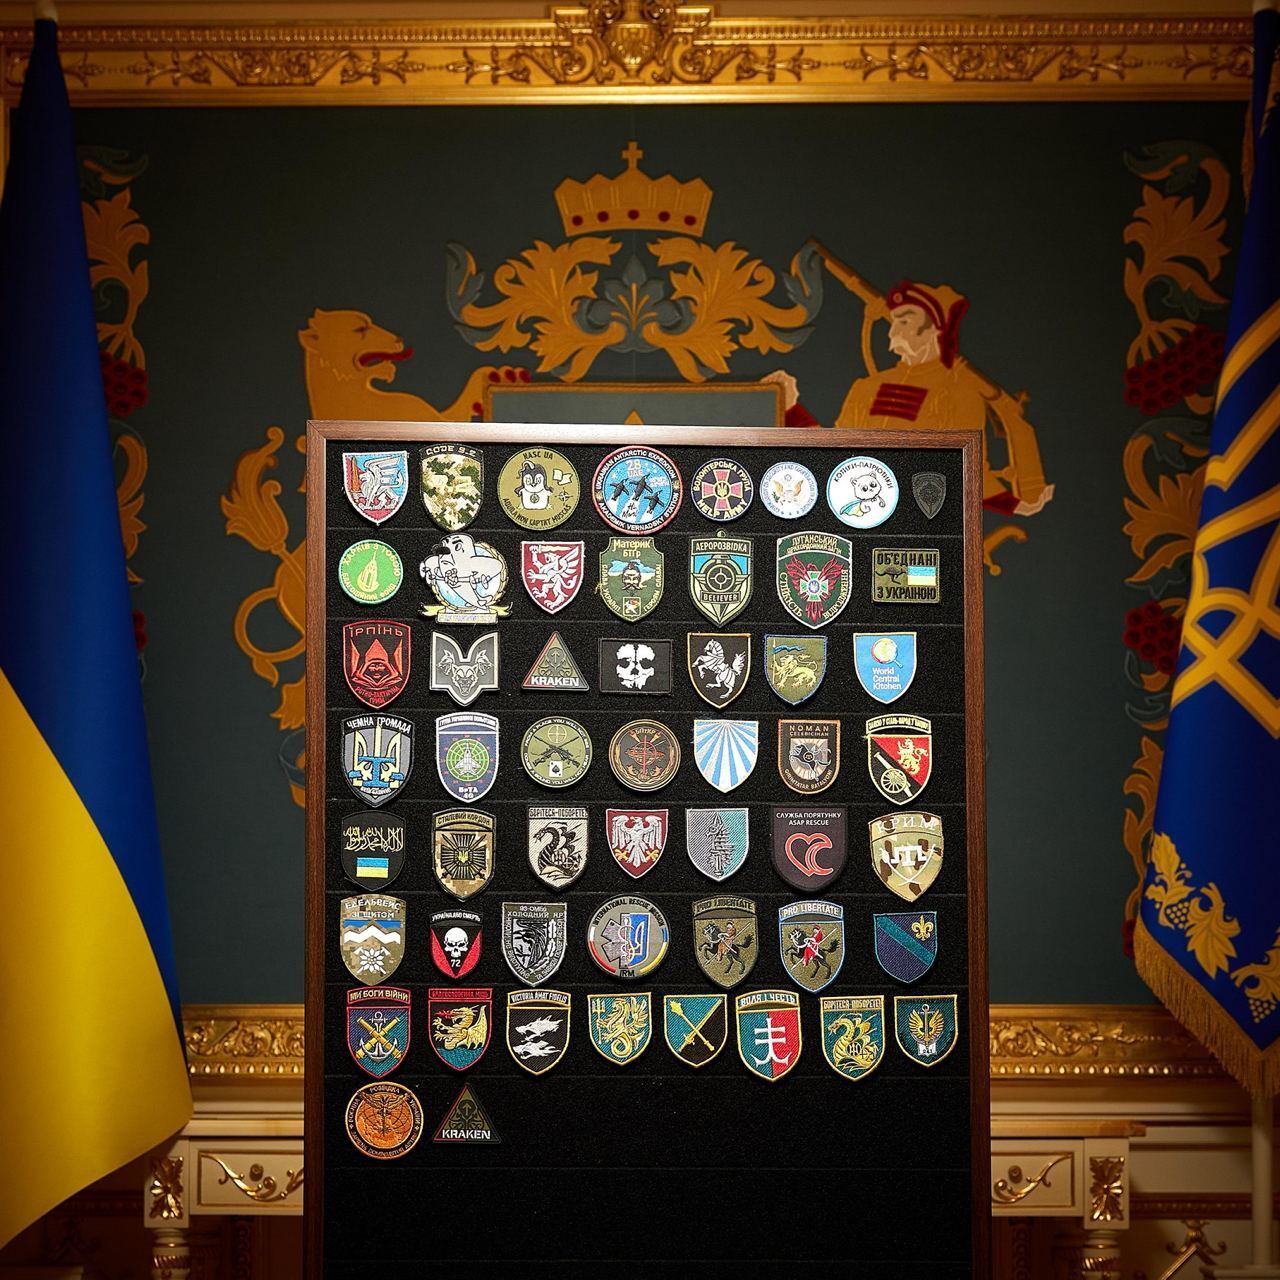 "Это честь для меня": Зеленский показал флаг, подаренный украинскими морпехами